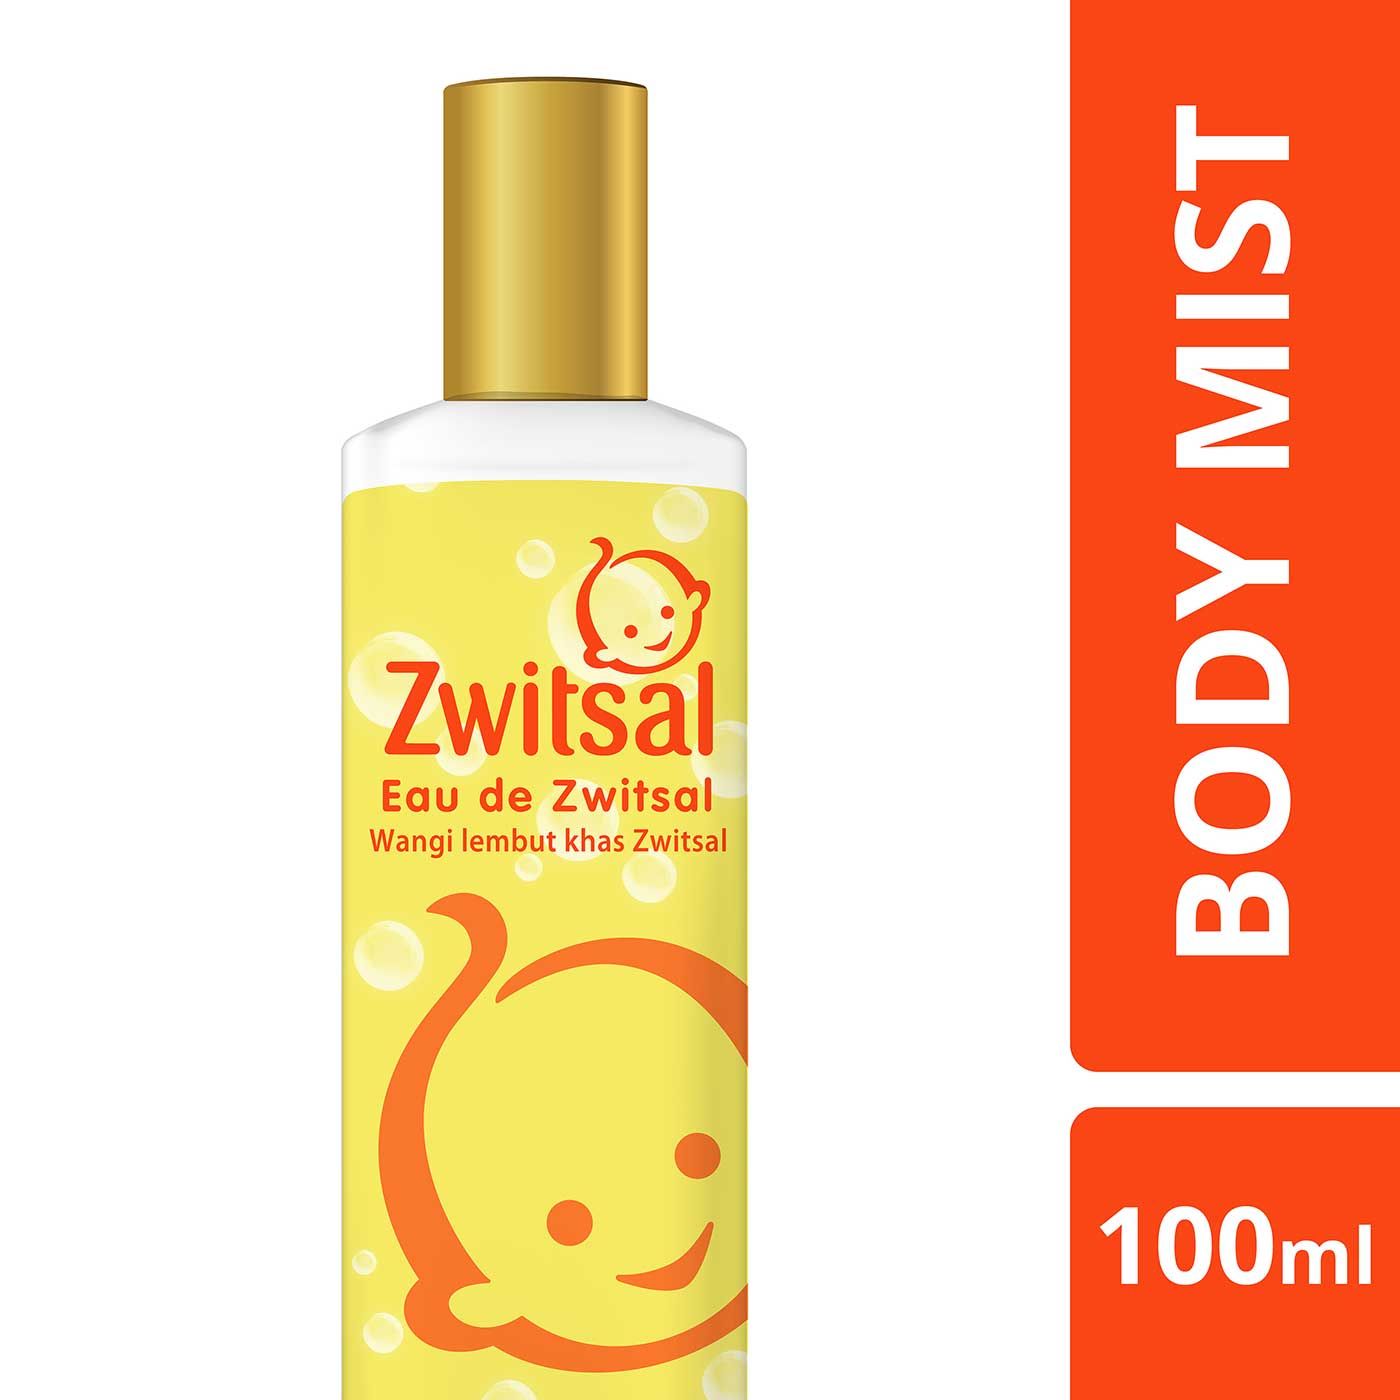 [Bundling] Free Zwitsal Eau De Toilette Body Mist 100ml(Isi 5) - 1